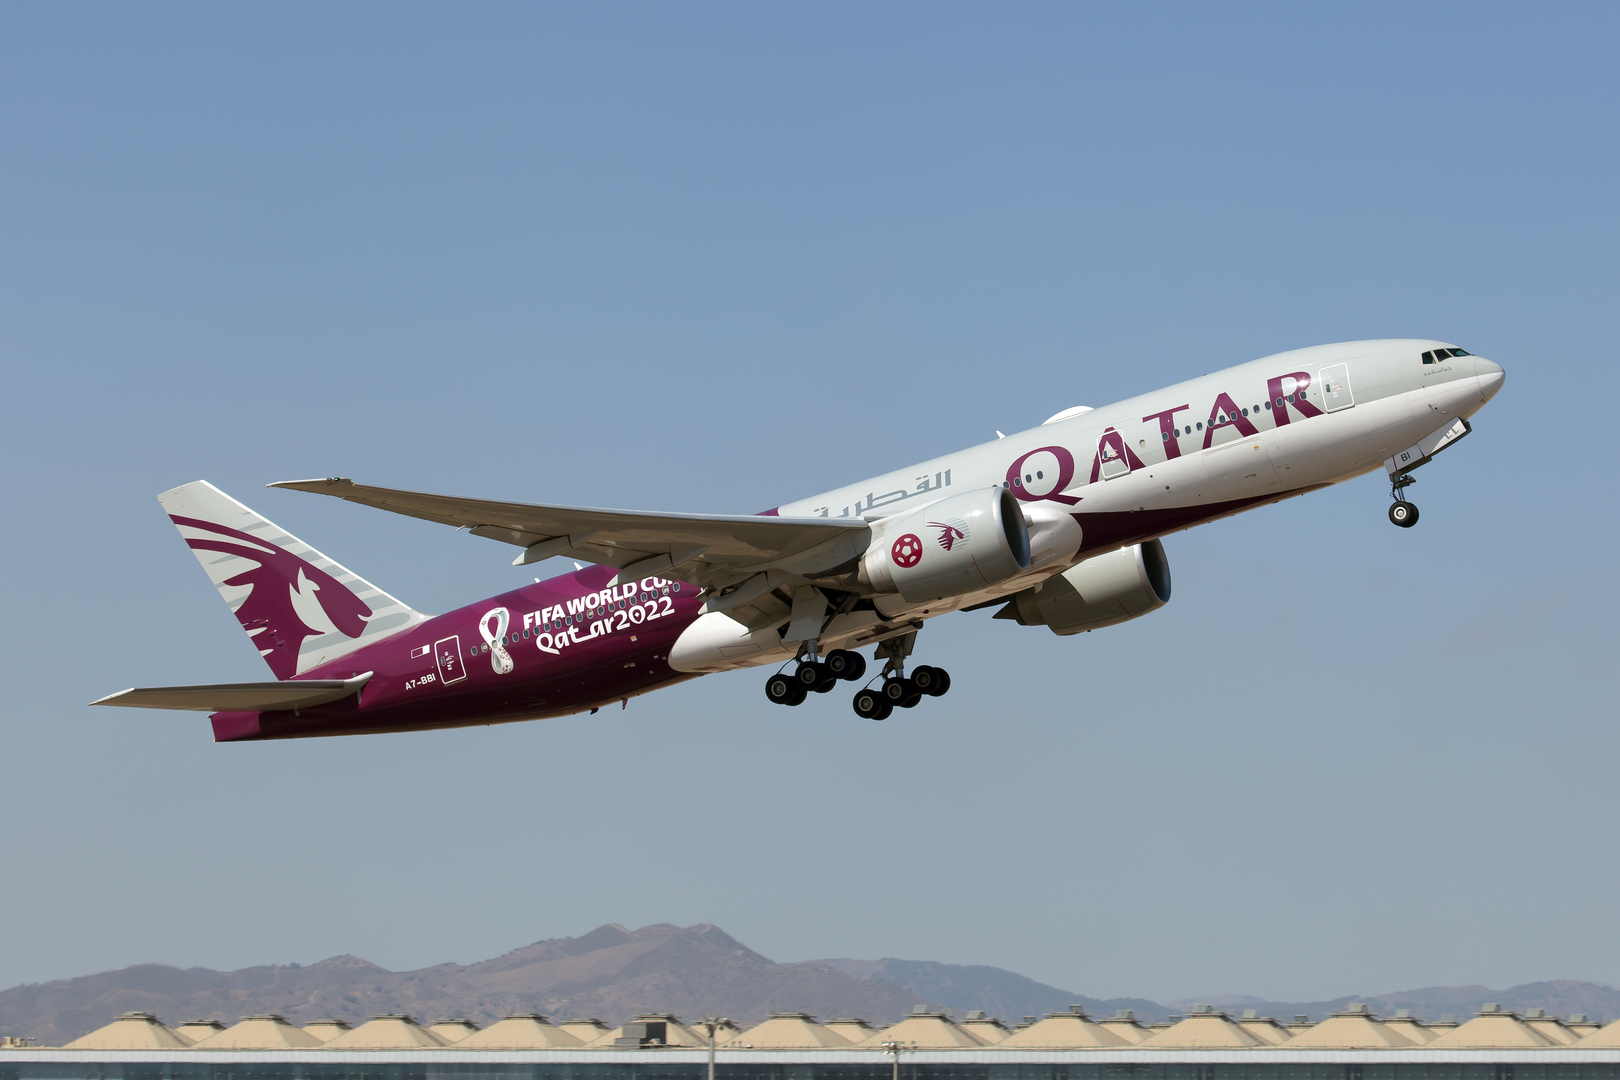 أسرار نجاح الخطوط الجوية القطرية - أحدث تقنيات الطائرات وأنظمة المراقبة للخطوط الجوية القطرية